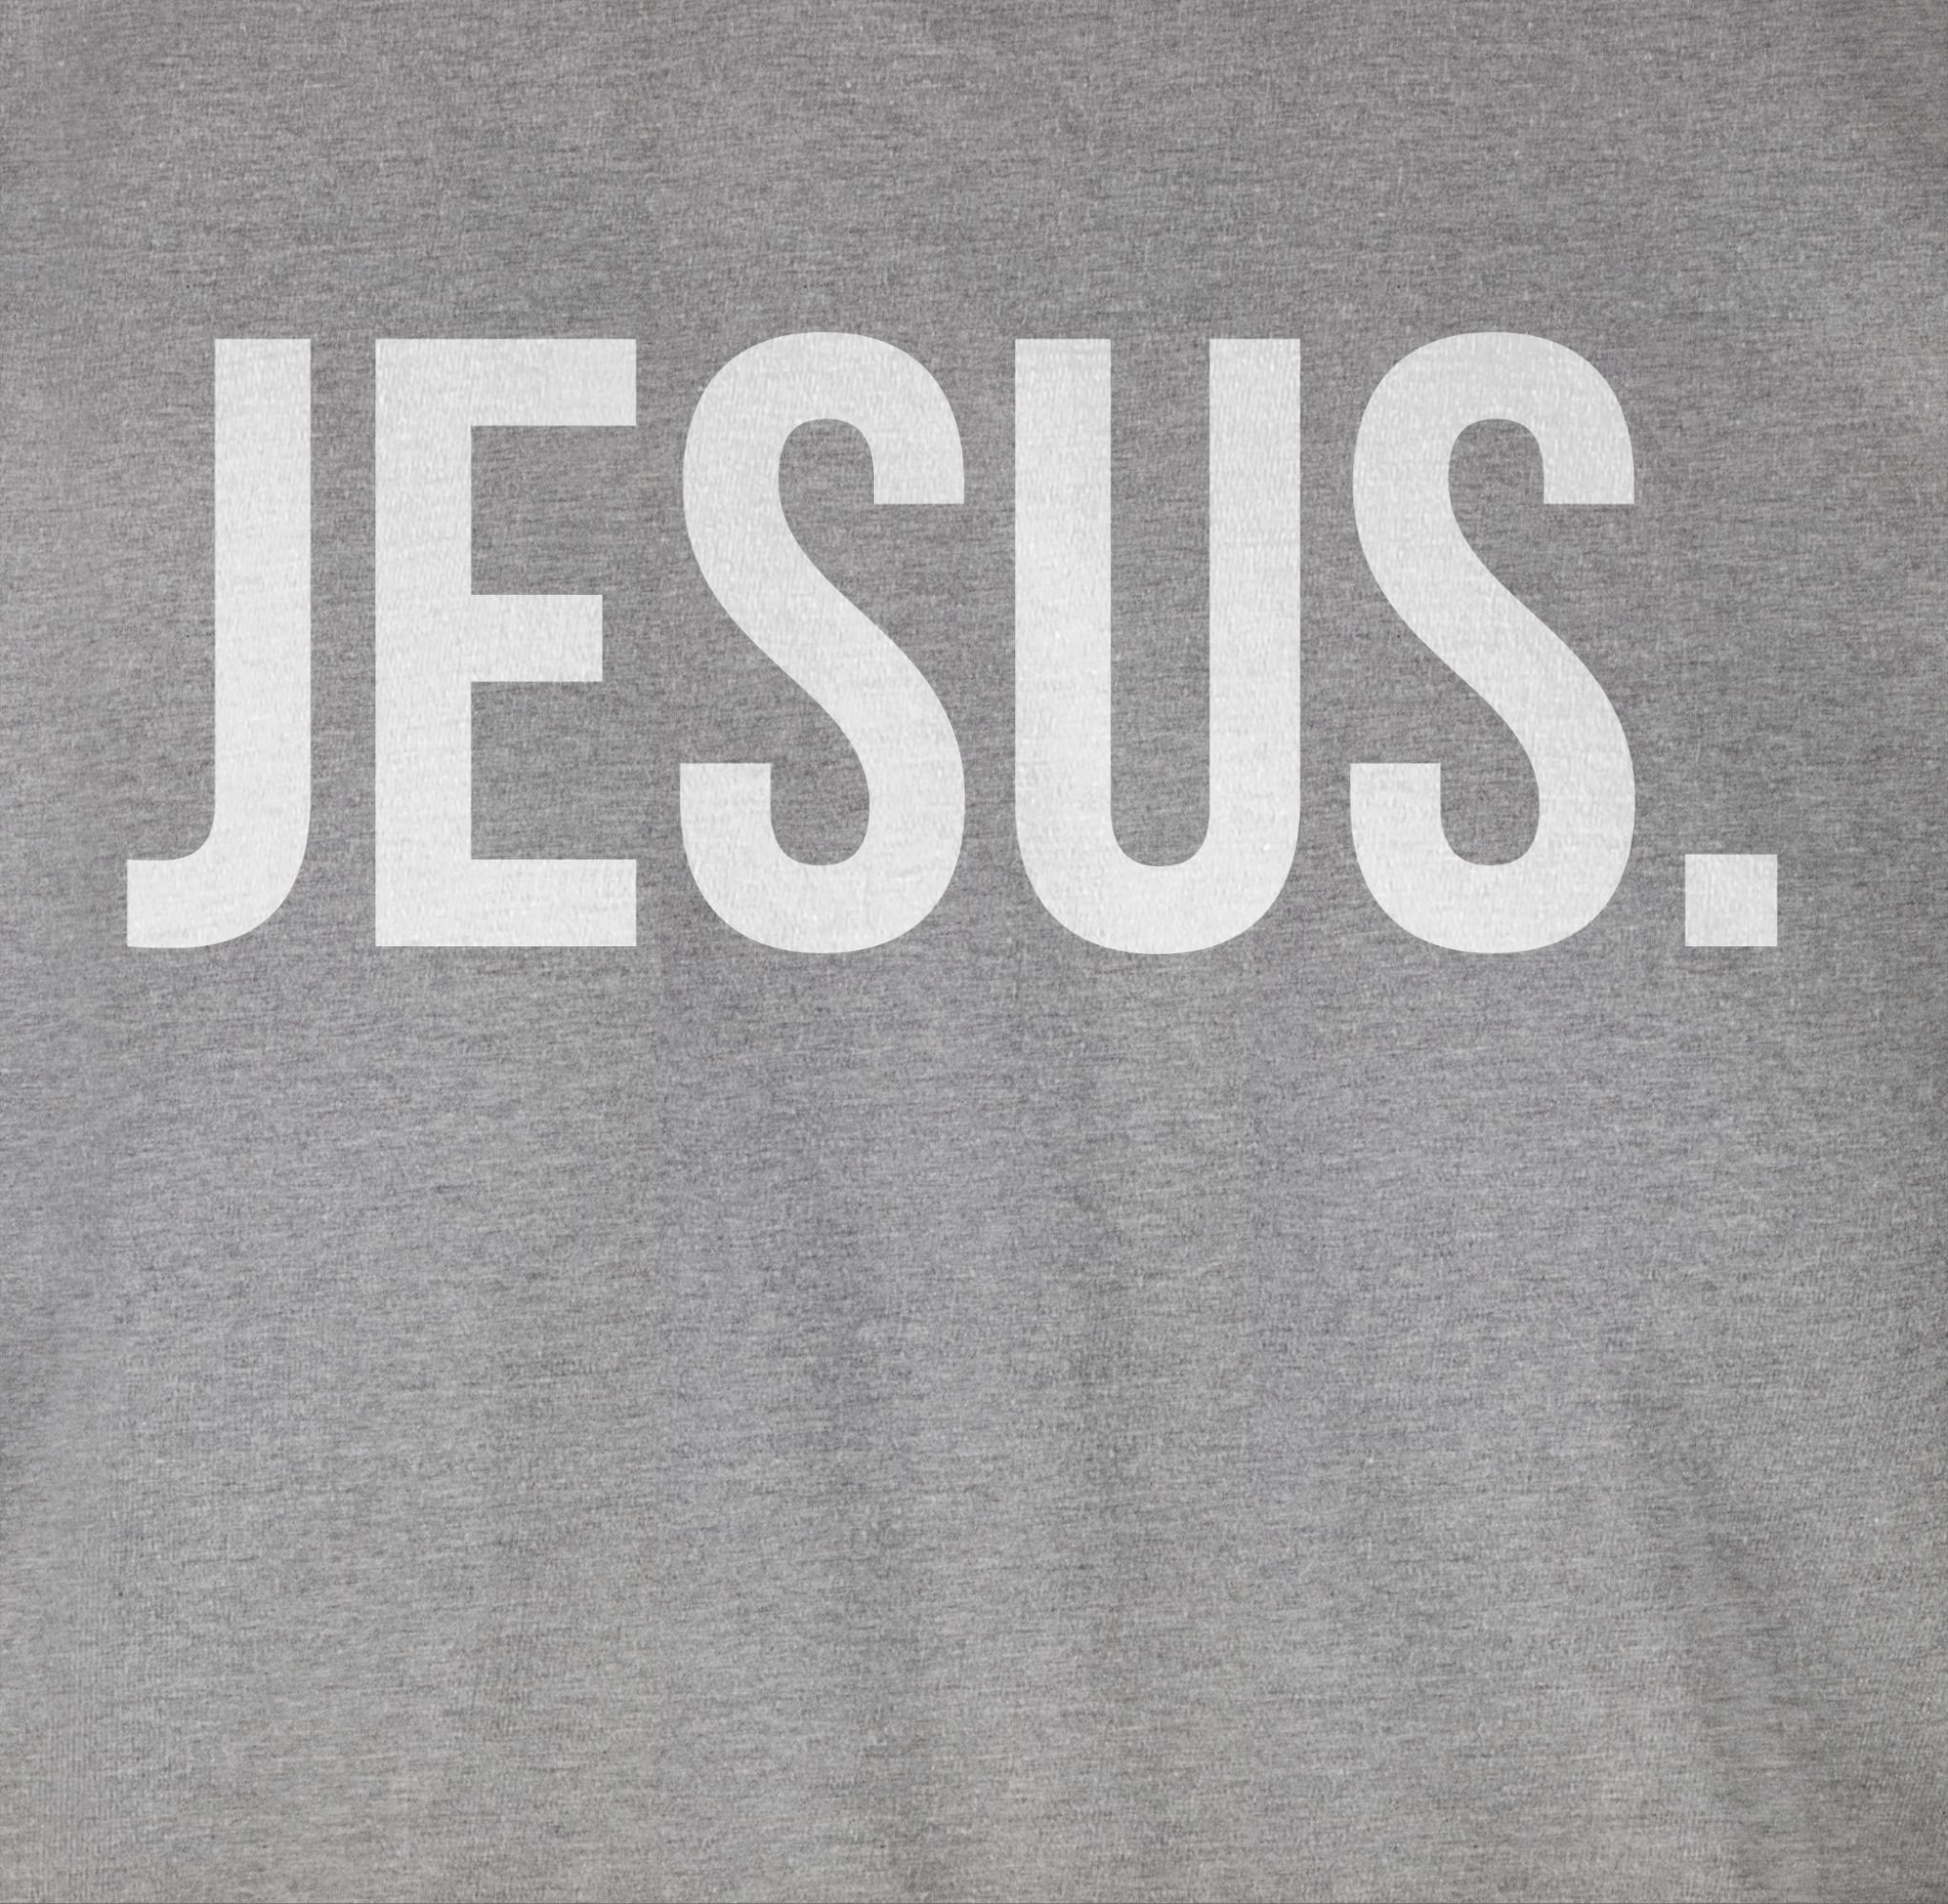 Shirtracer Glaube 2 T-Shirt Religion Grau Christus Jesus meliert Statement weiss